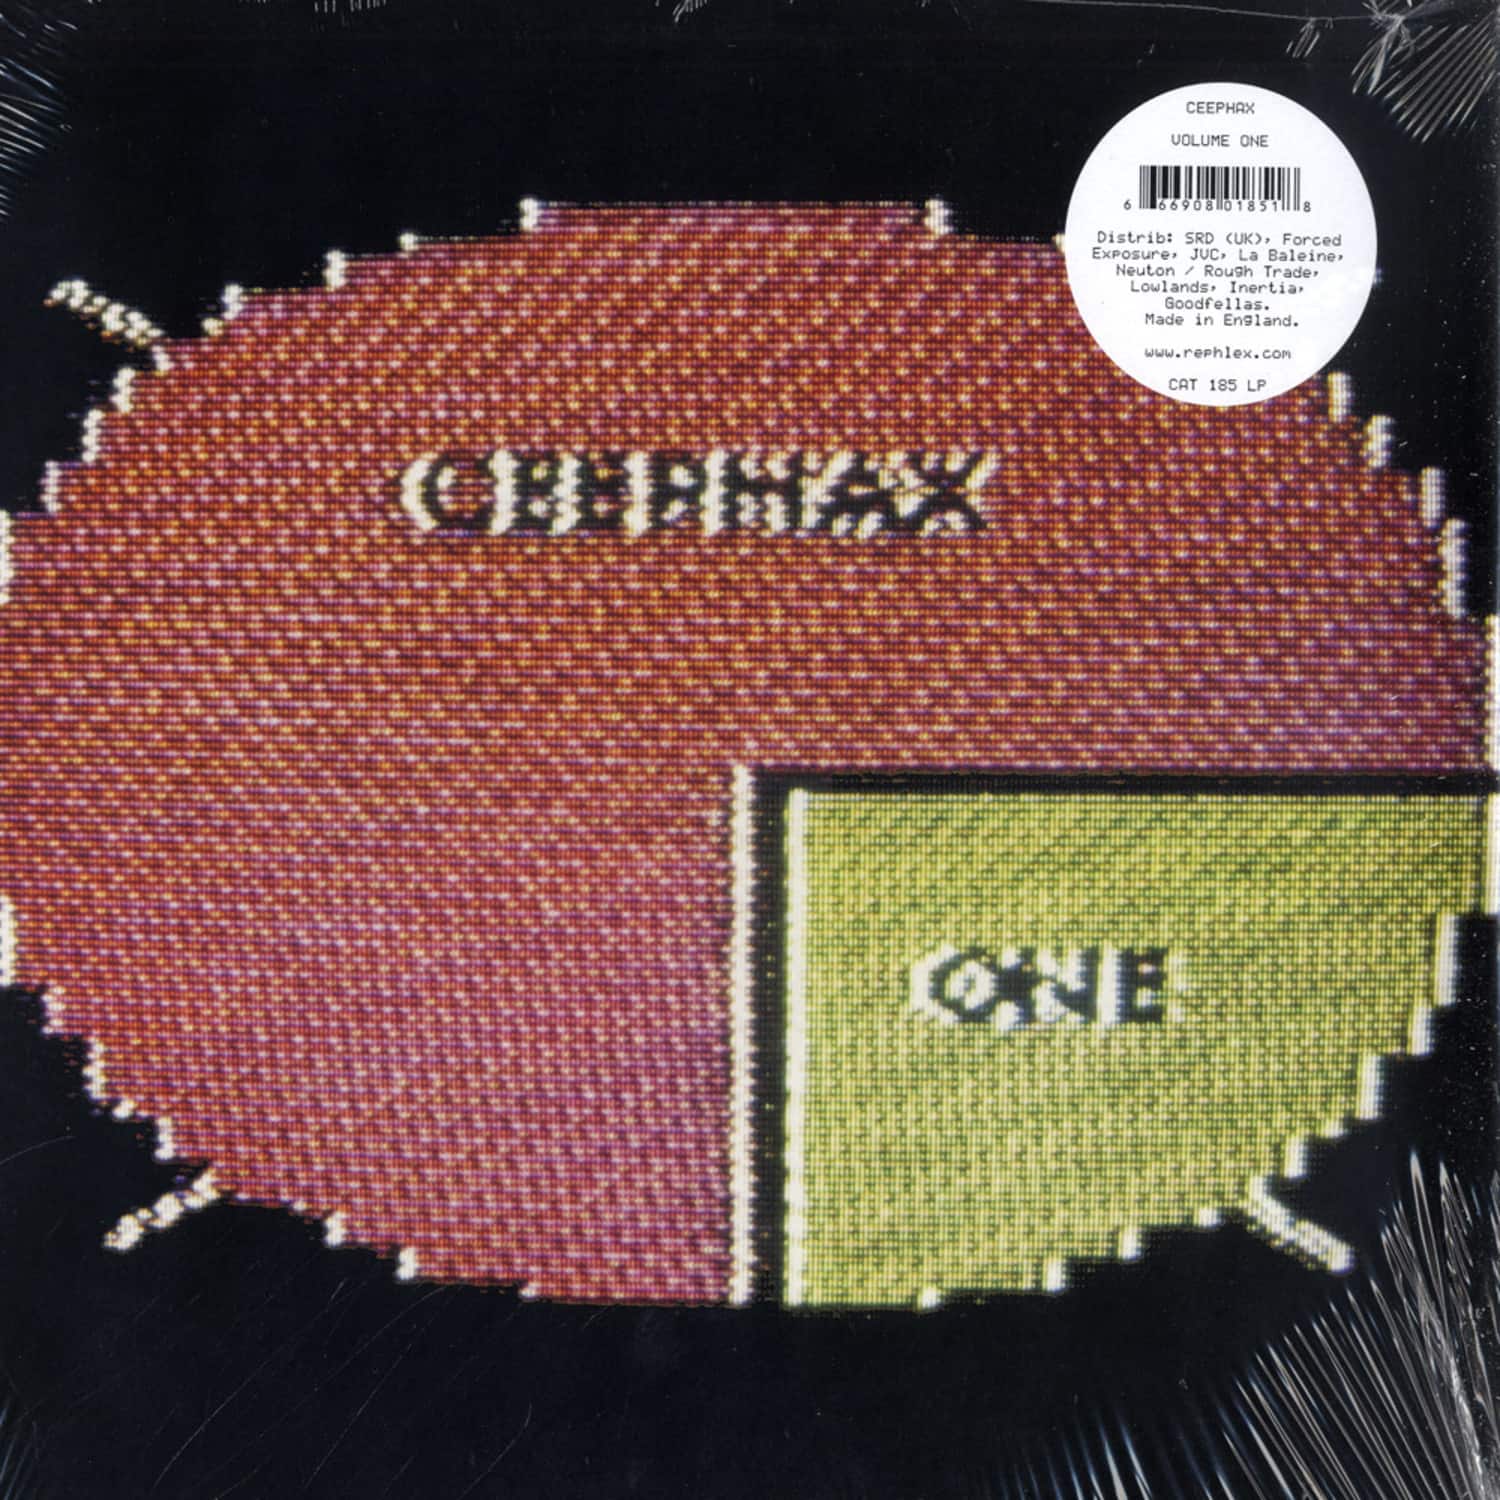 Ceephax - VOLUME ONE 